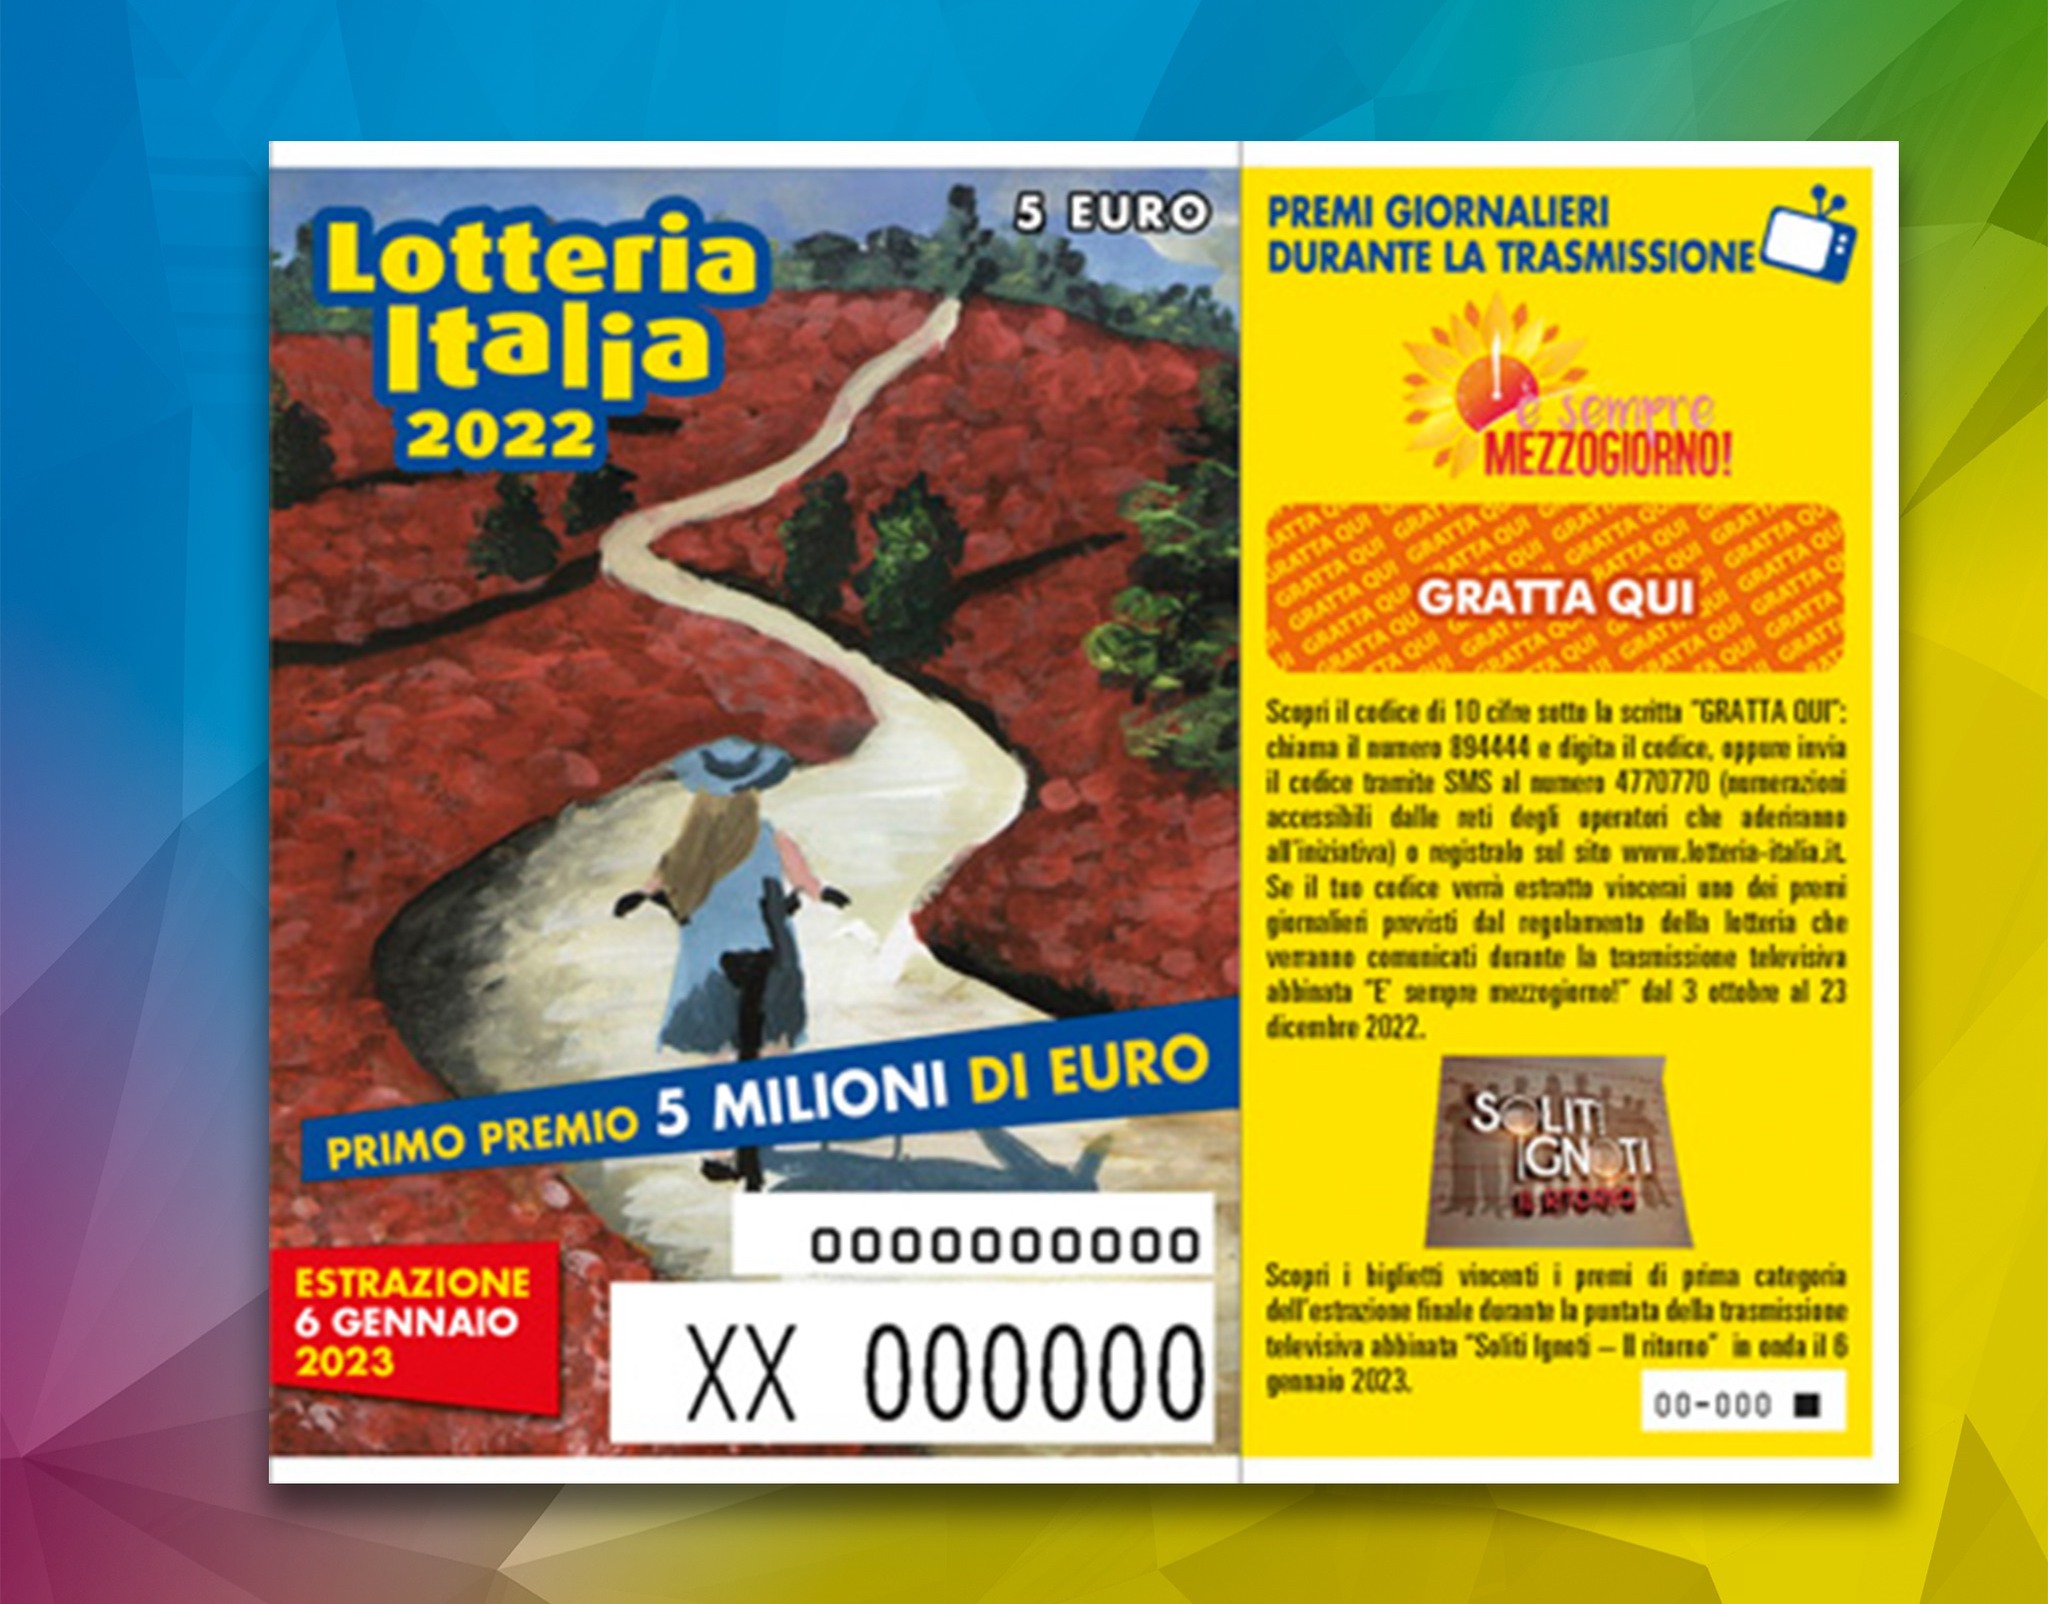 Lotteria Italia 2022: estrazione e premi per i biglietti vincenti